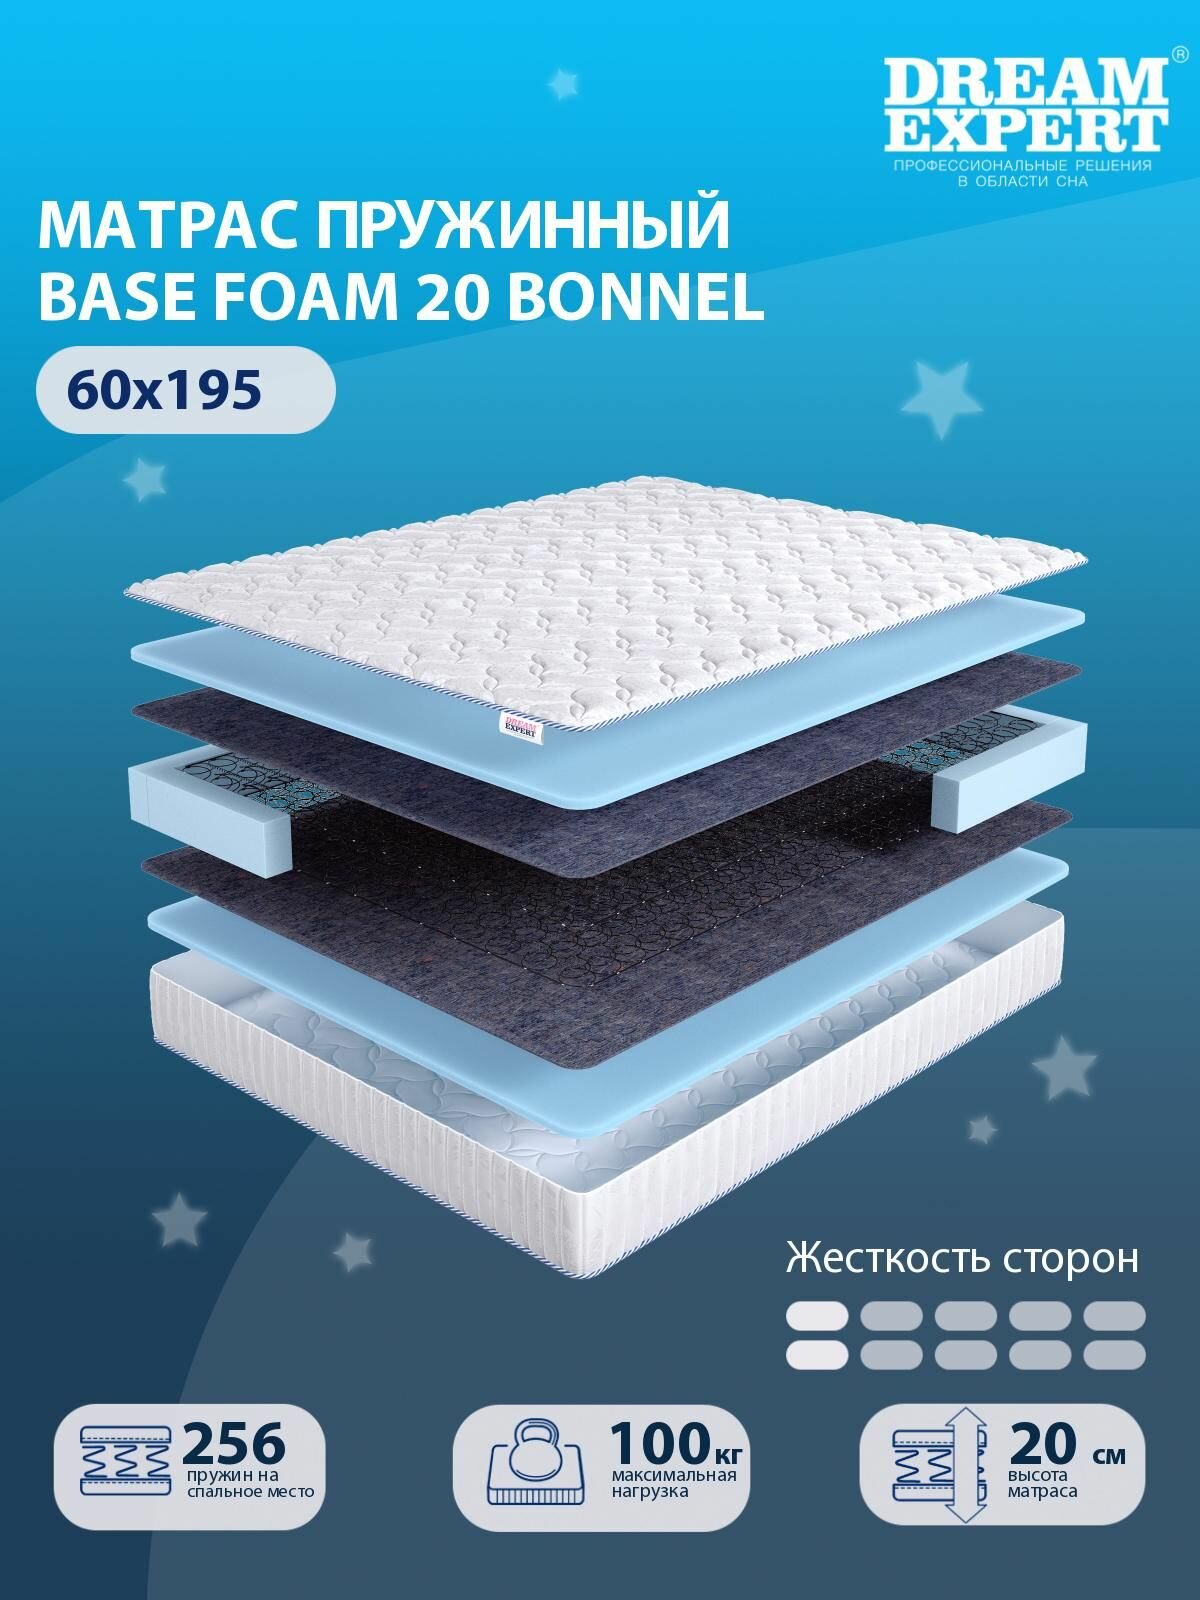 Матрас DreamExpert Base Foam 20 Bonnel низкой жесткости, детский, зависимый пружинный блок, на кровать 60x195